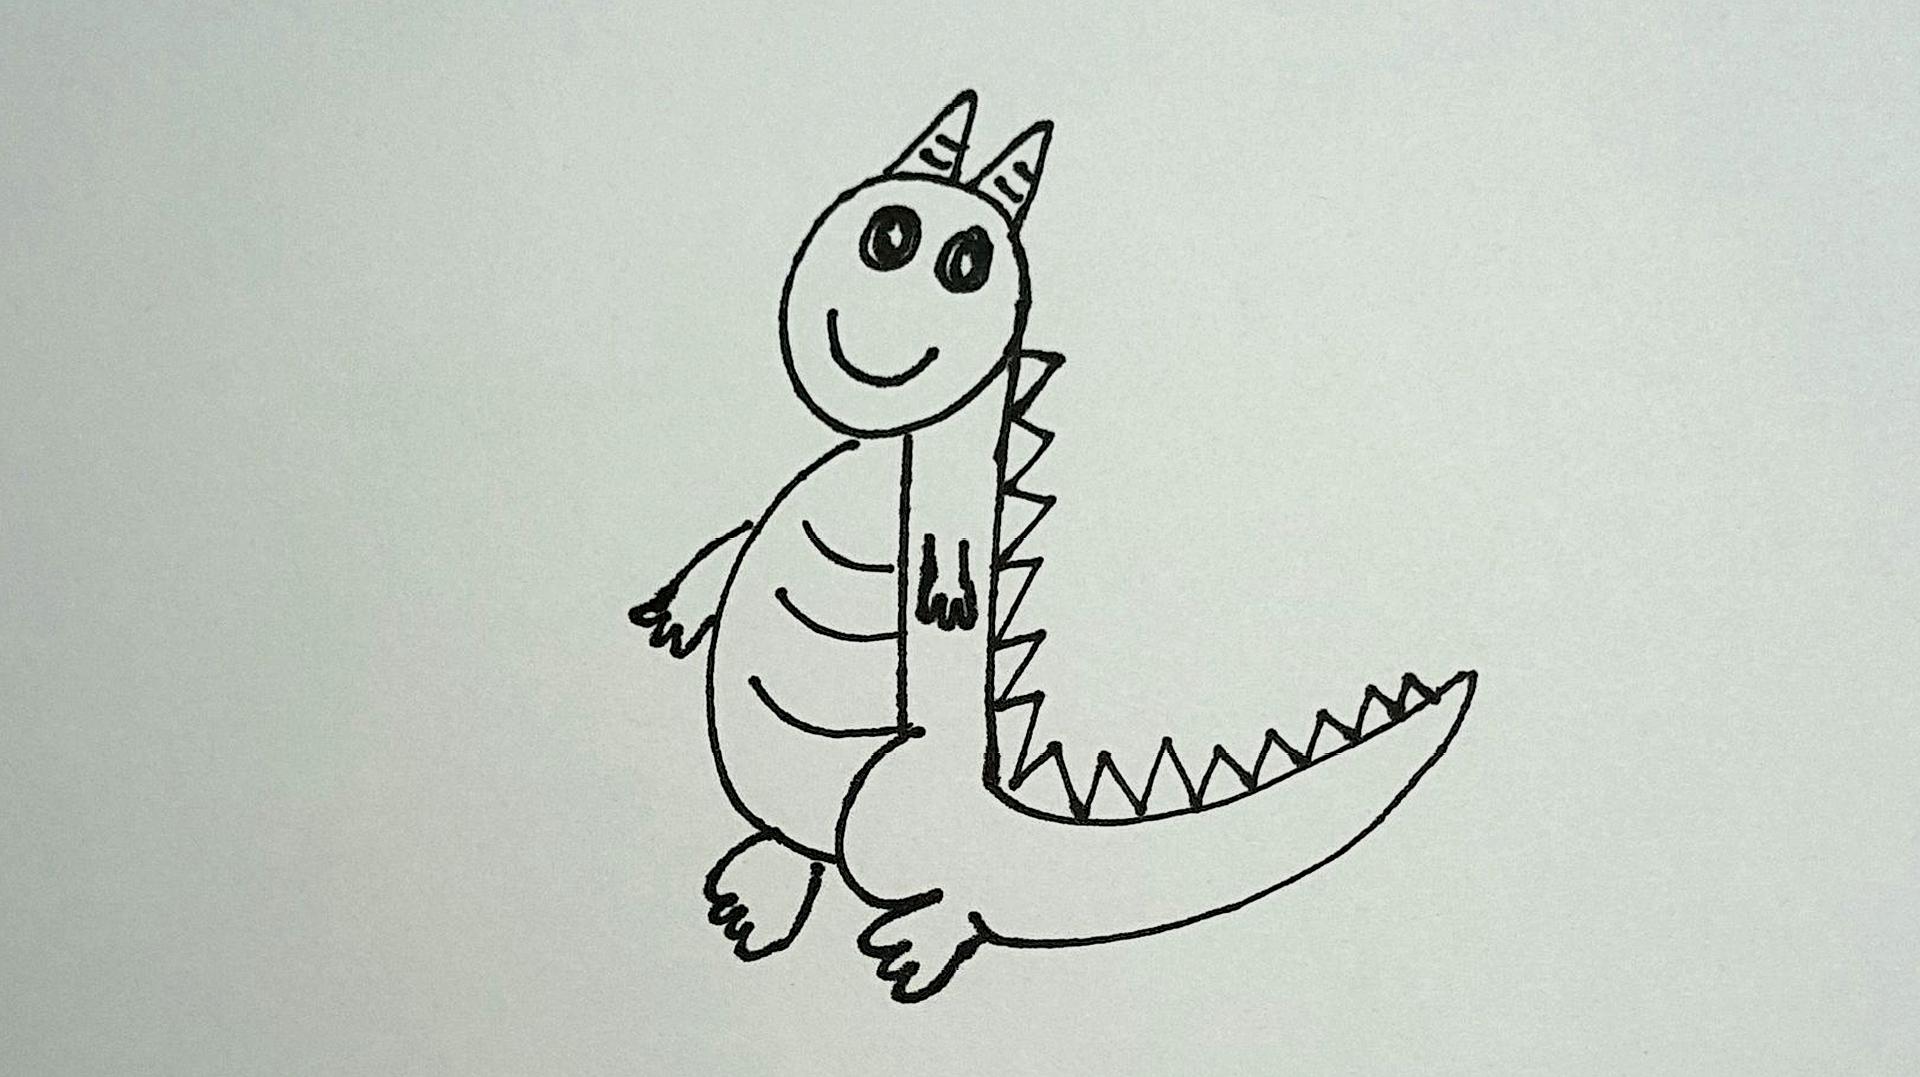 简笔画小技巧:分享一下怎么用数字9简单几笔画出一个卡通恐龙